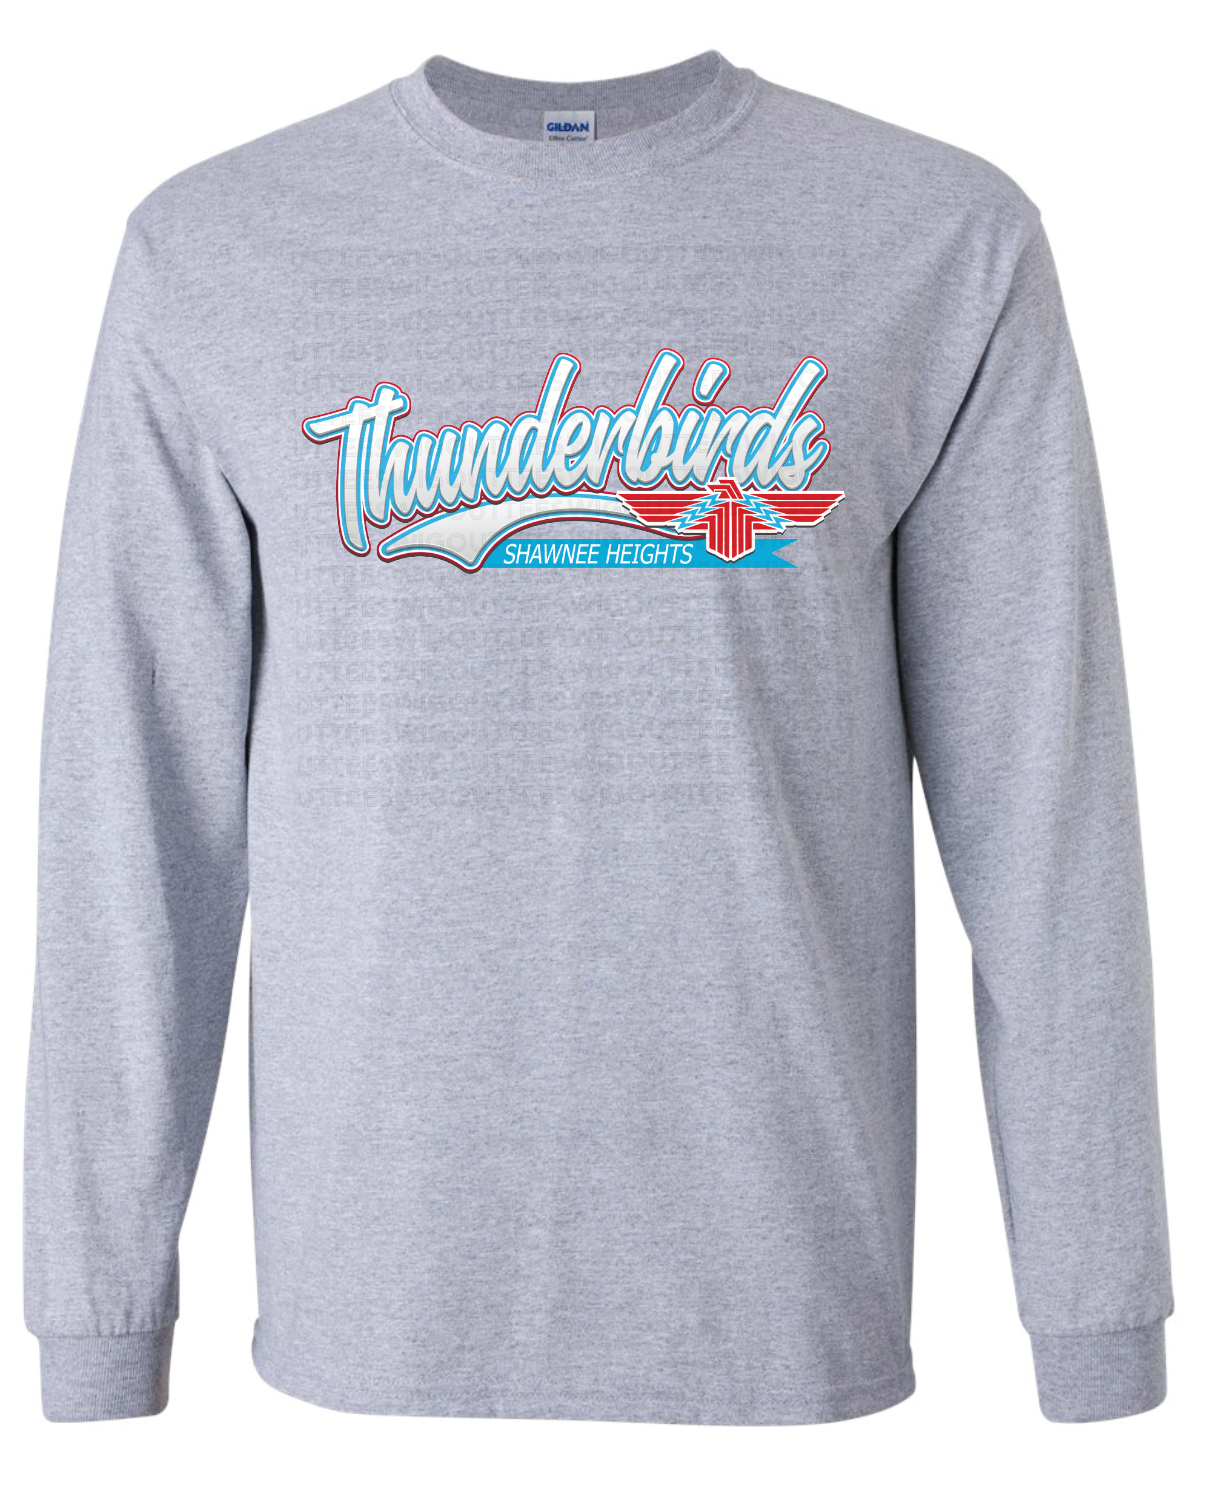 Thunderbirds at SHES Long Sleeve T-Shirt